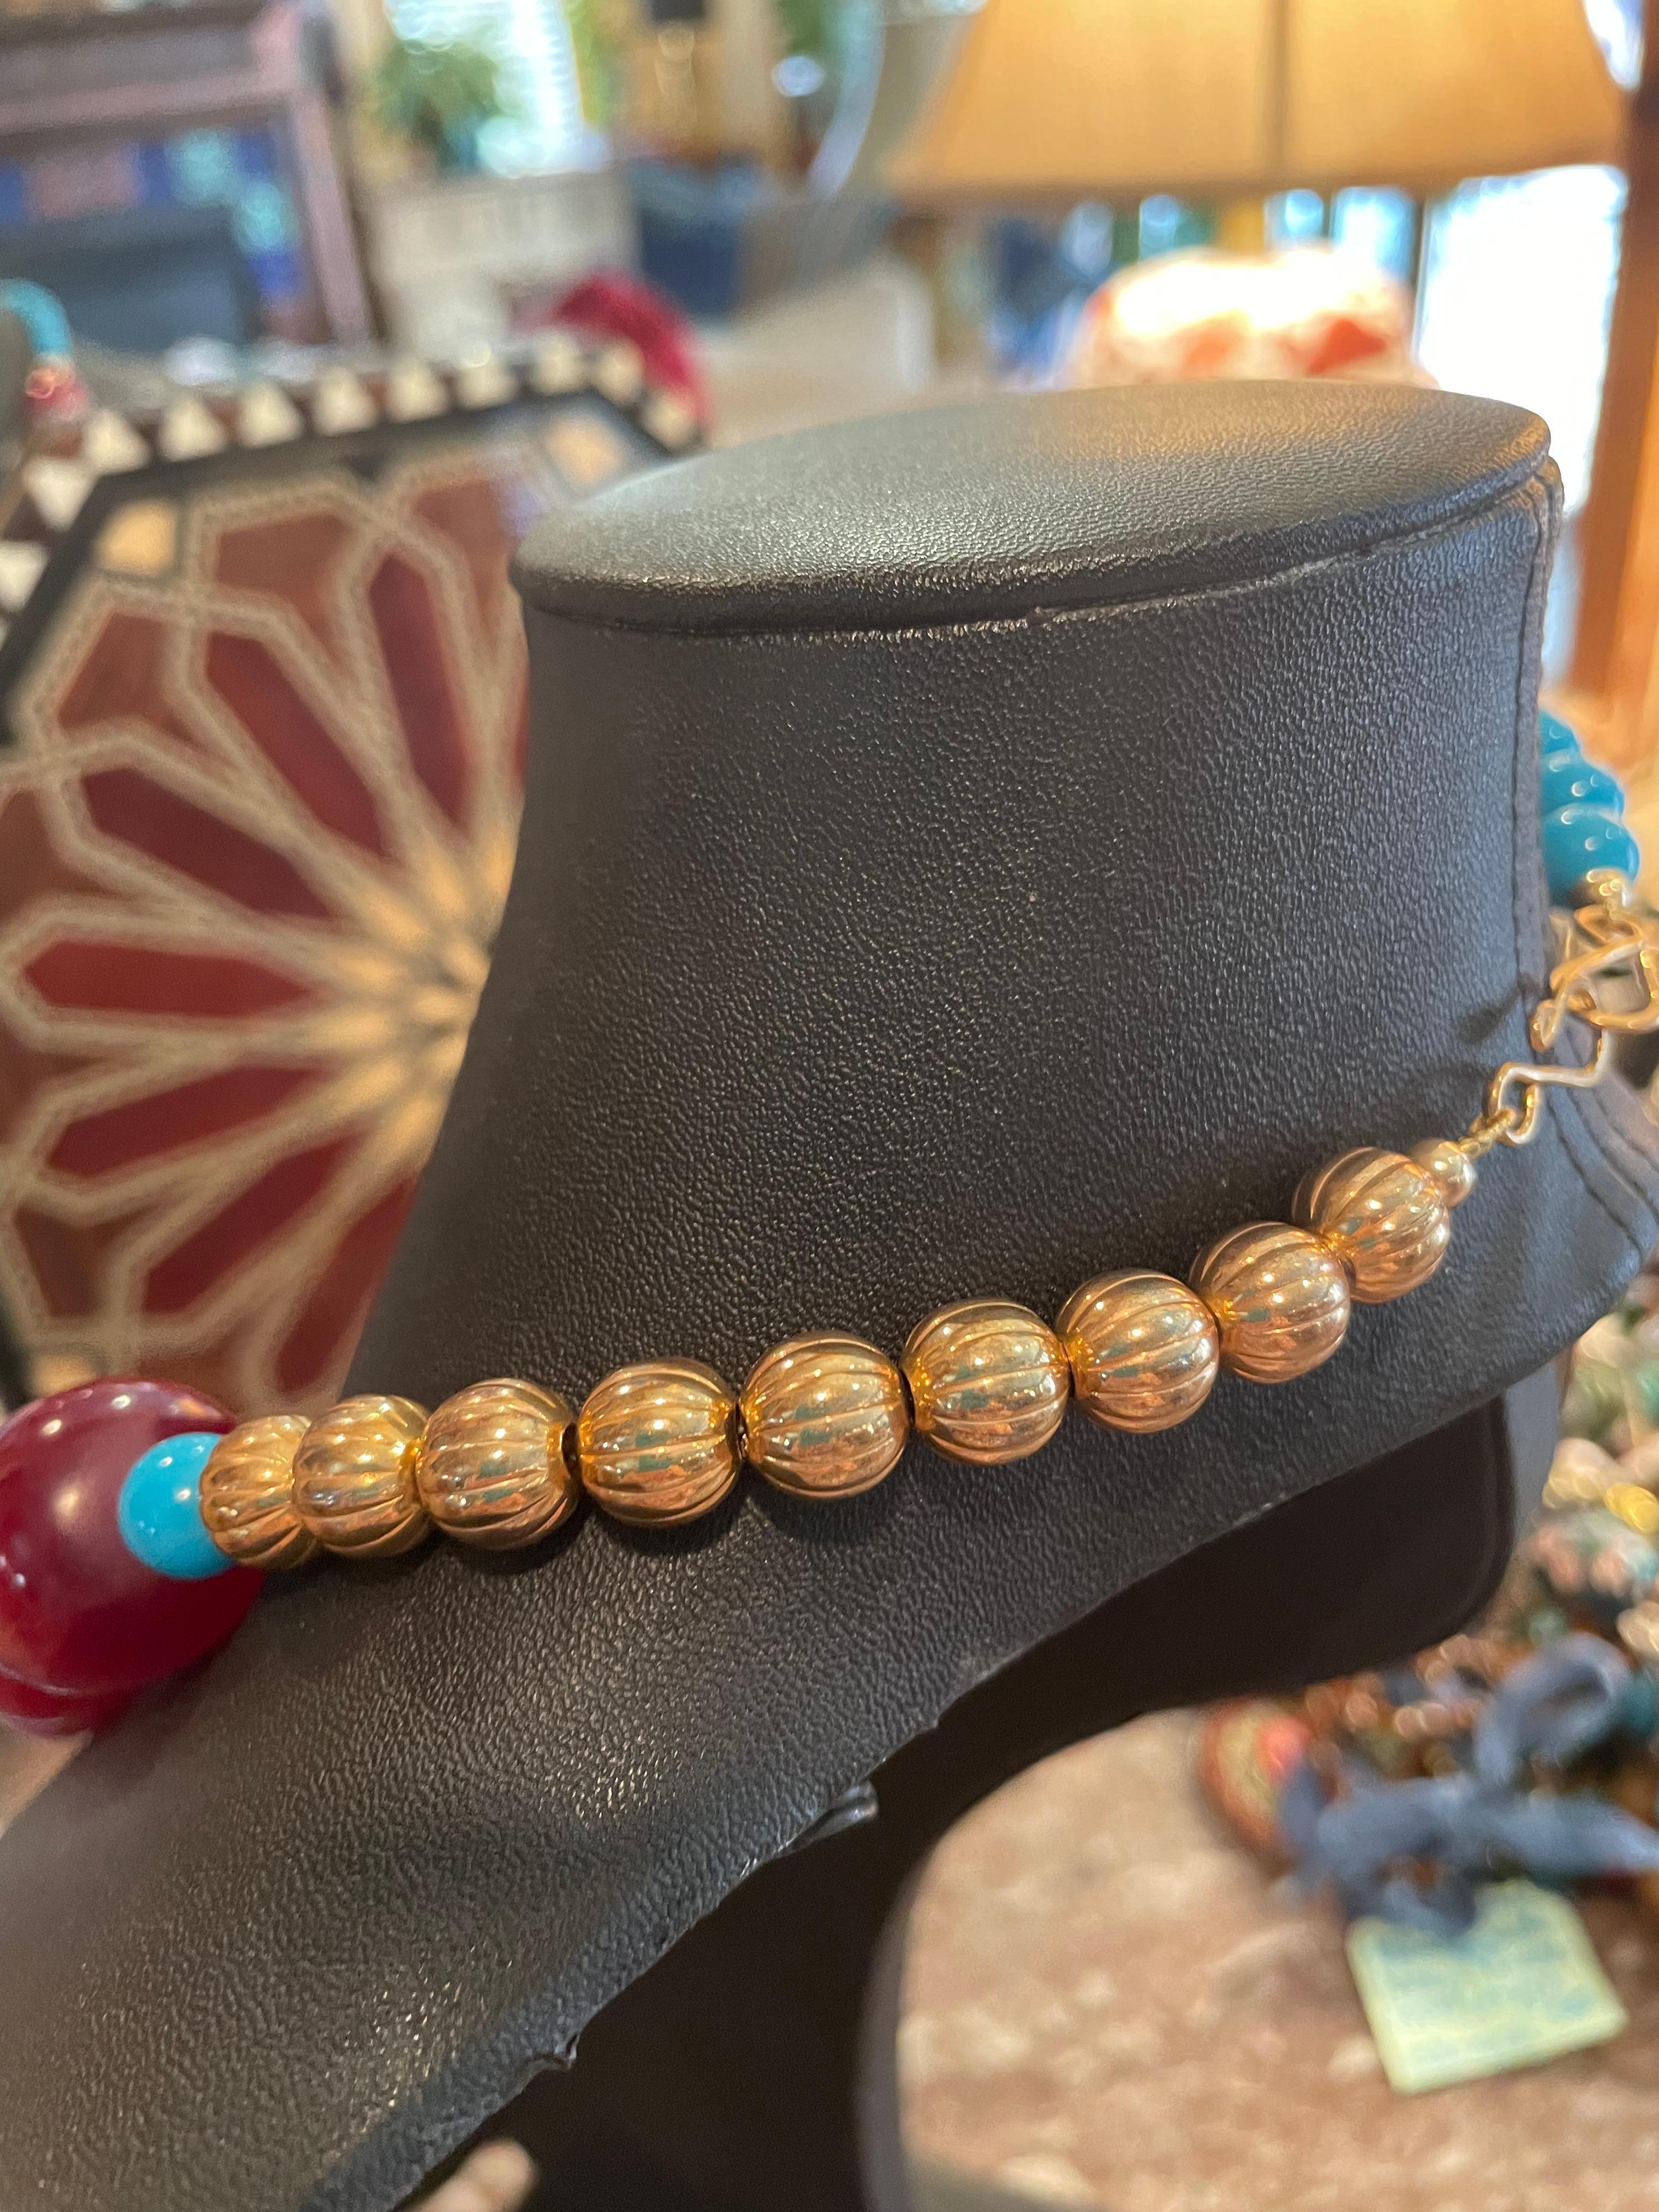 Fait main, unique en son genre, ce collier est composé de perles chinoises vintage en or incrustées et de perles en bakélite des années 80, d'une incroyable beauté.  Les perles dorées servent d'intercalaires. Les perles françaises vintage en